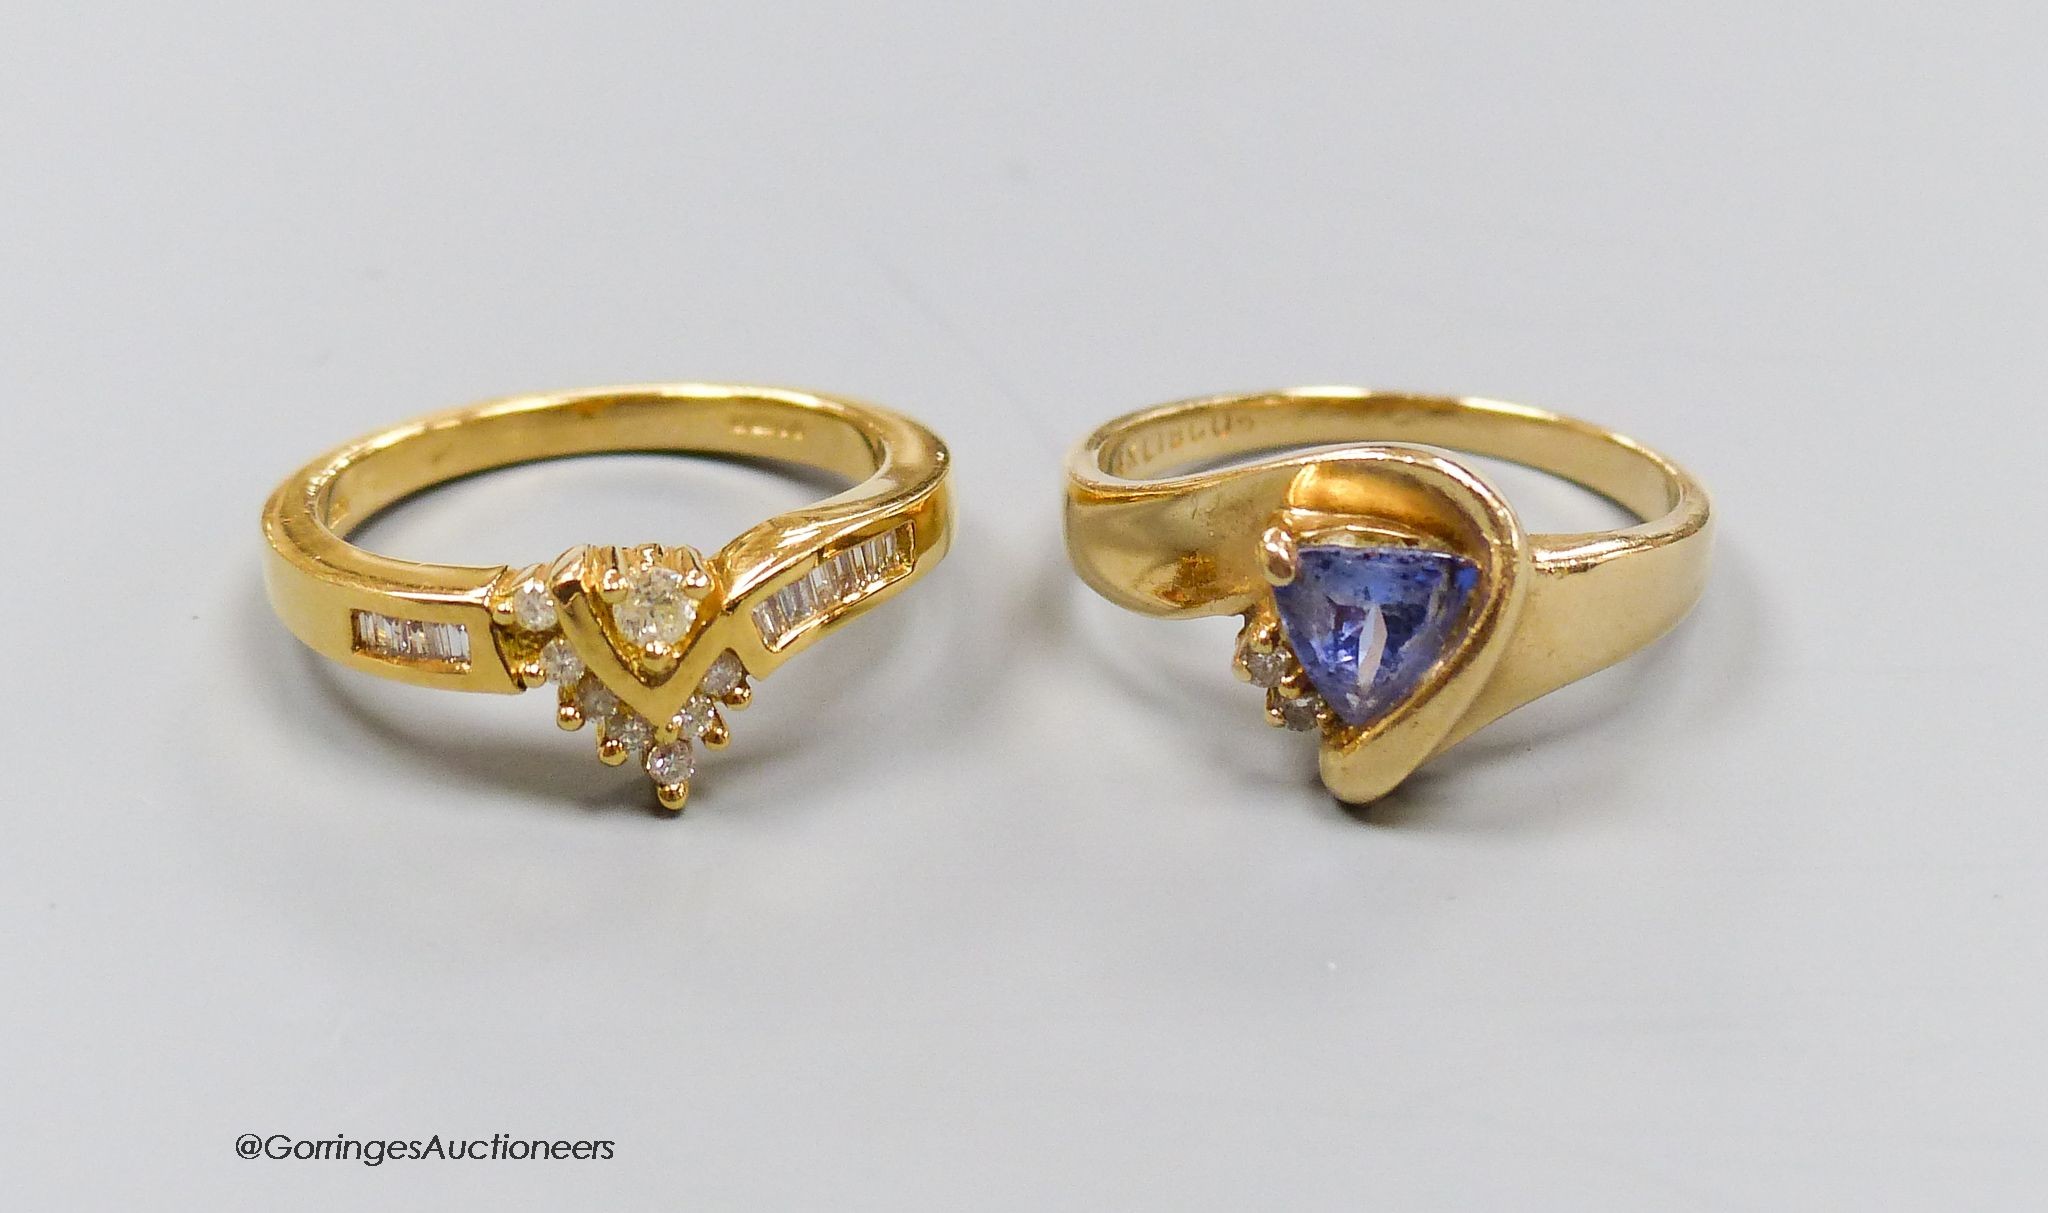 An 18ct gold and diamond dress ring, size N, gross 4.5g, and a 14k gold, diamond and tanzanite ring, size N, gross 3.7g.